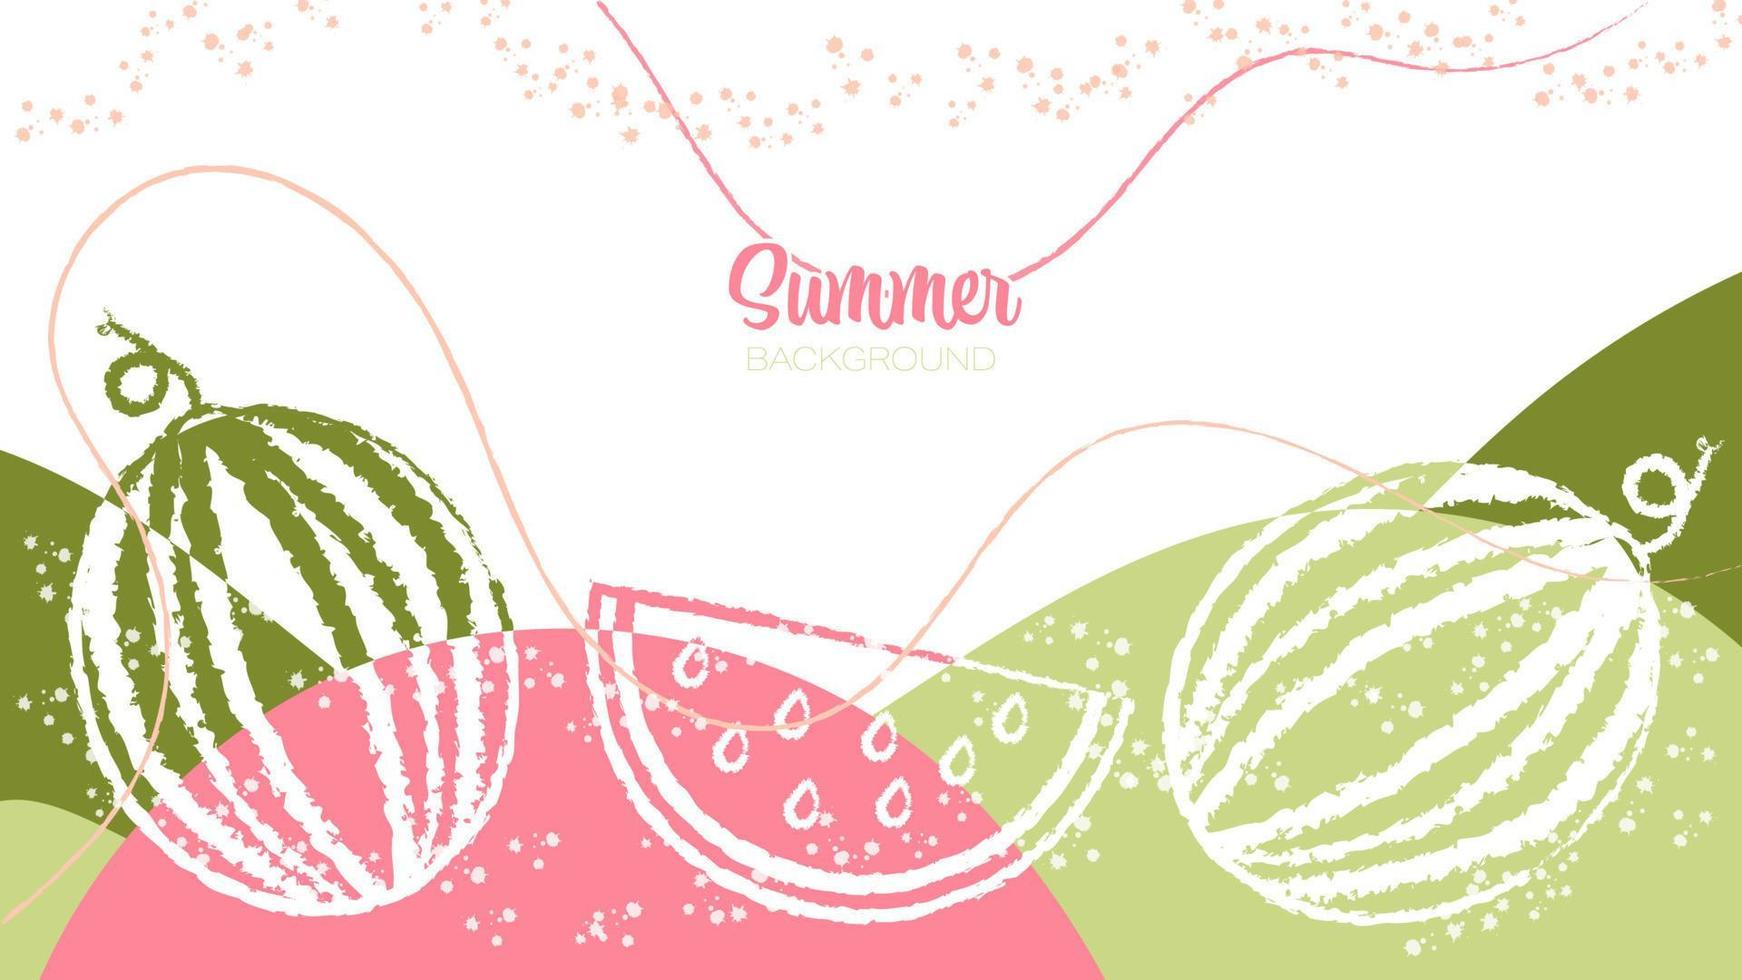 sfondo estivo grafico decorativo vettoriale con cocomeri pieni, fetta di anguria, pennellate e schizzi